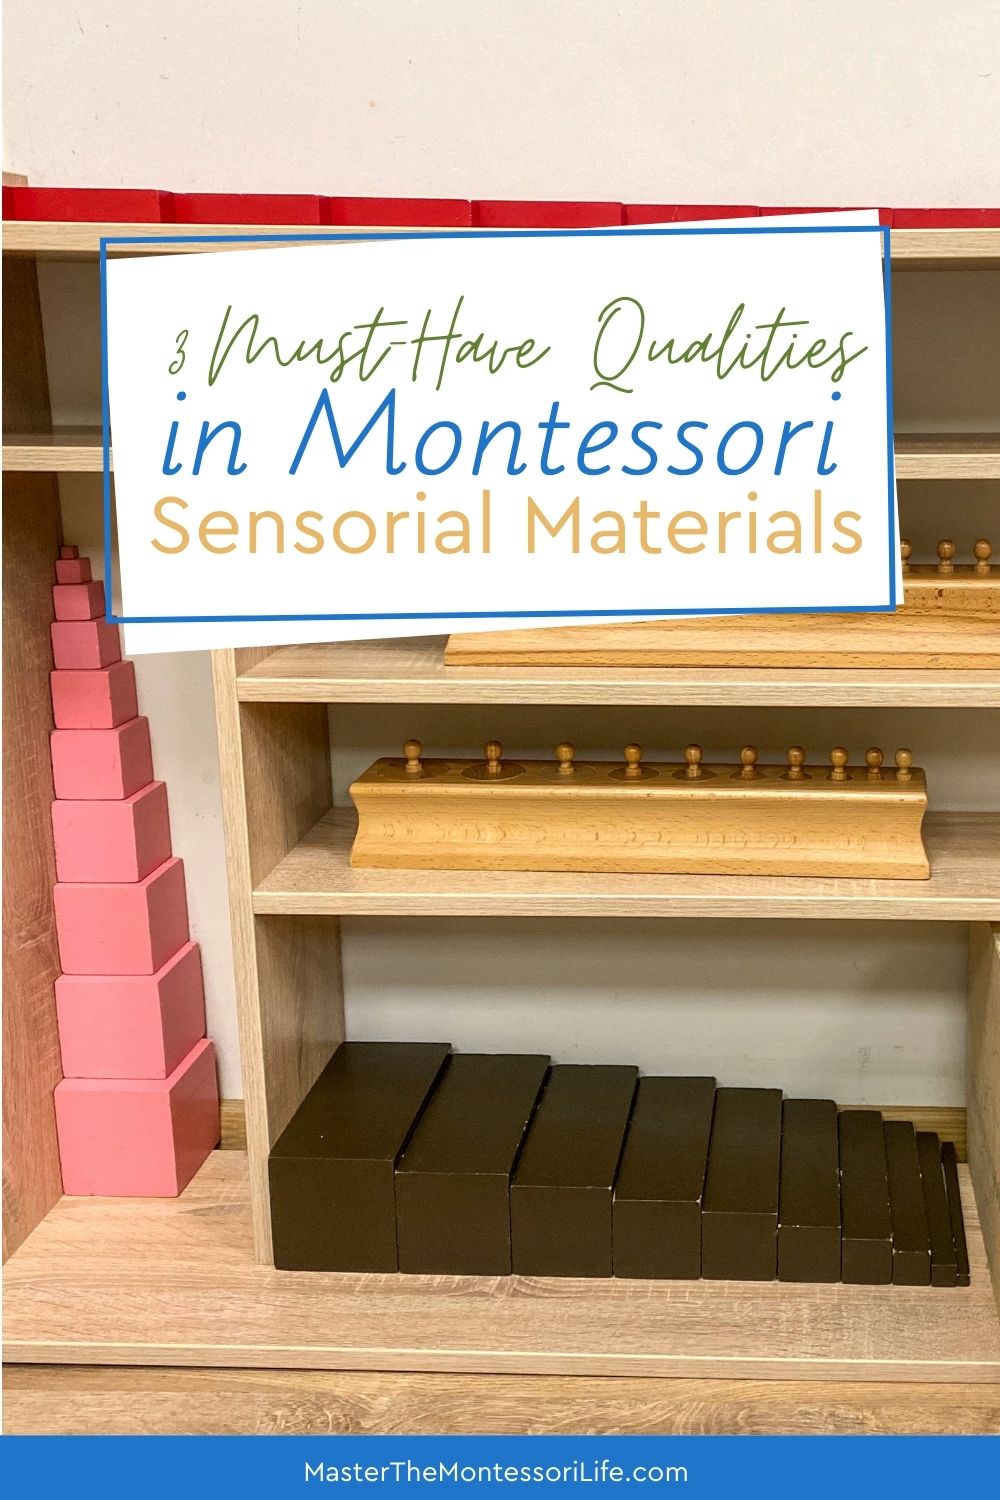 3 Must-have Qualities in Montessori Sensorial Materials